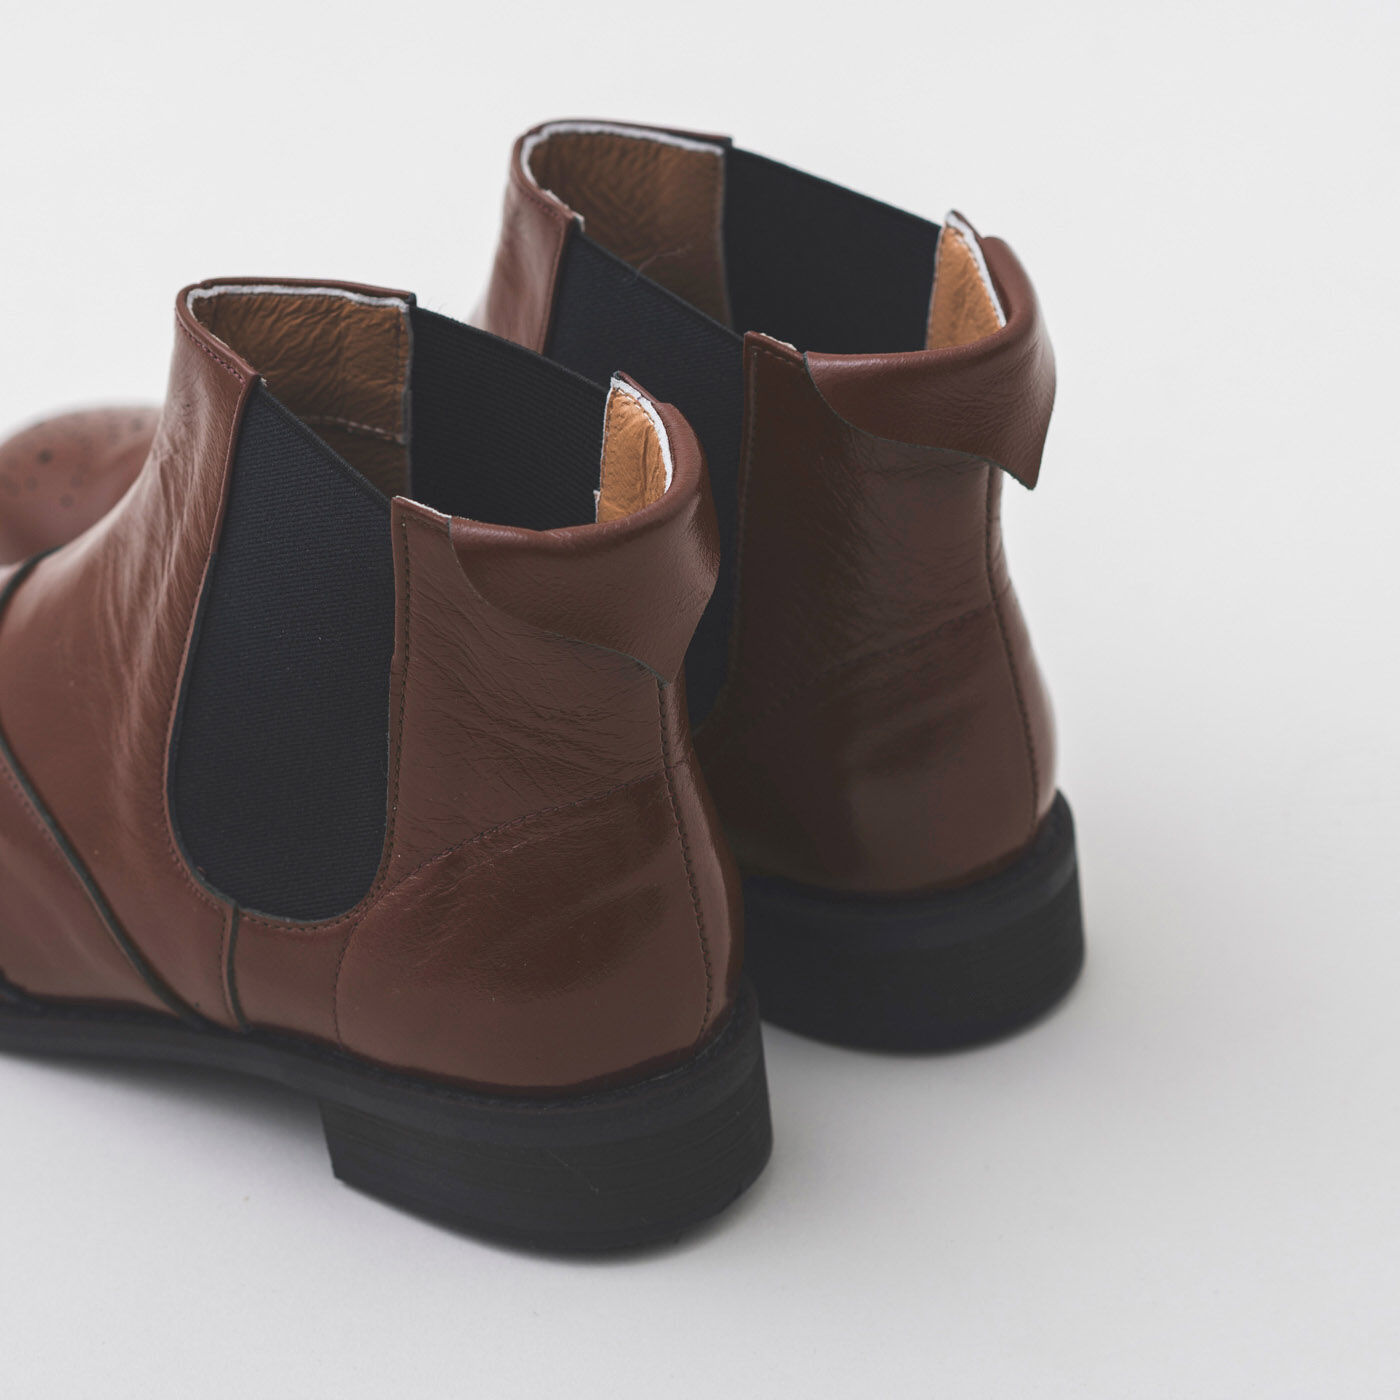 ＆Stories|長田の靴メーカーと作った 職人本革のサイドゴアブーツ〈レッドブラウン〉